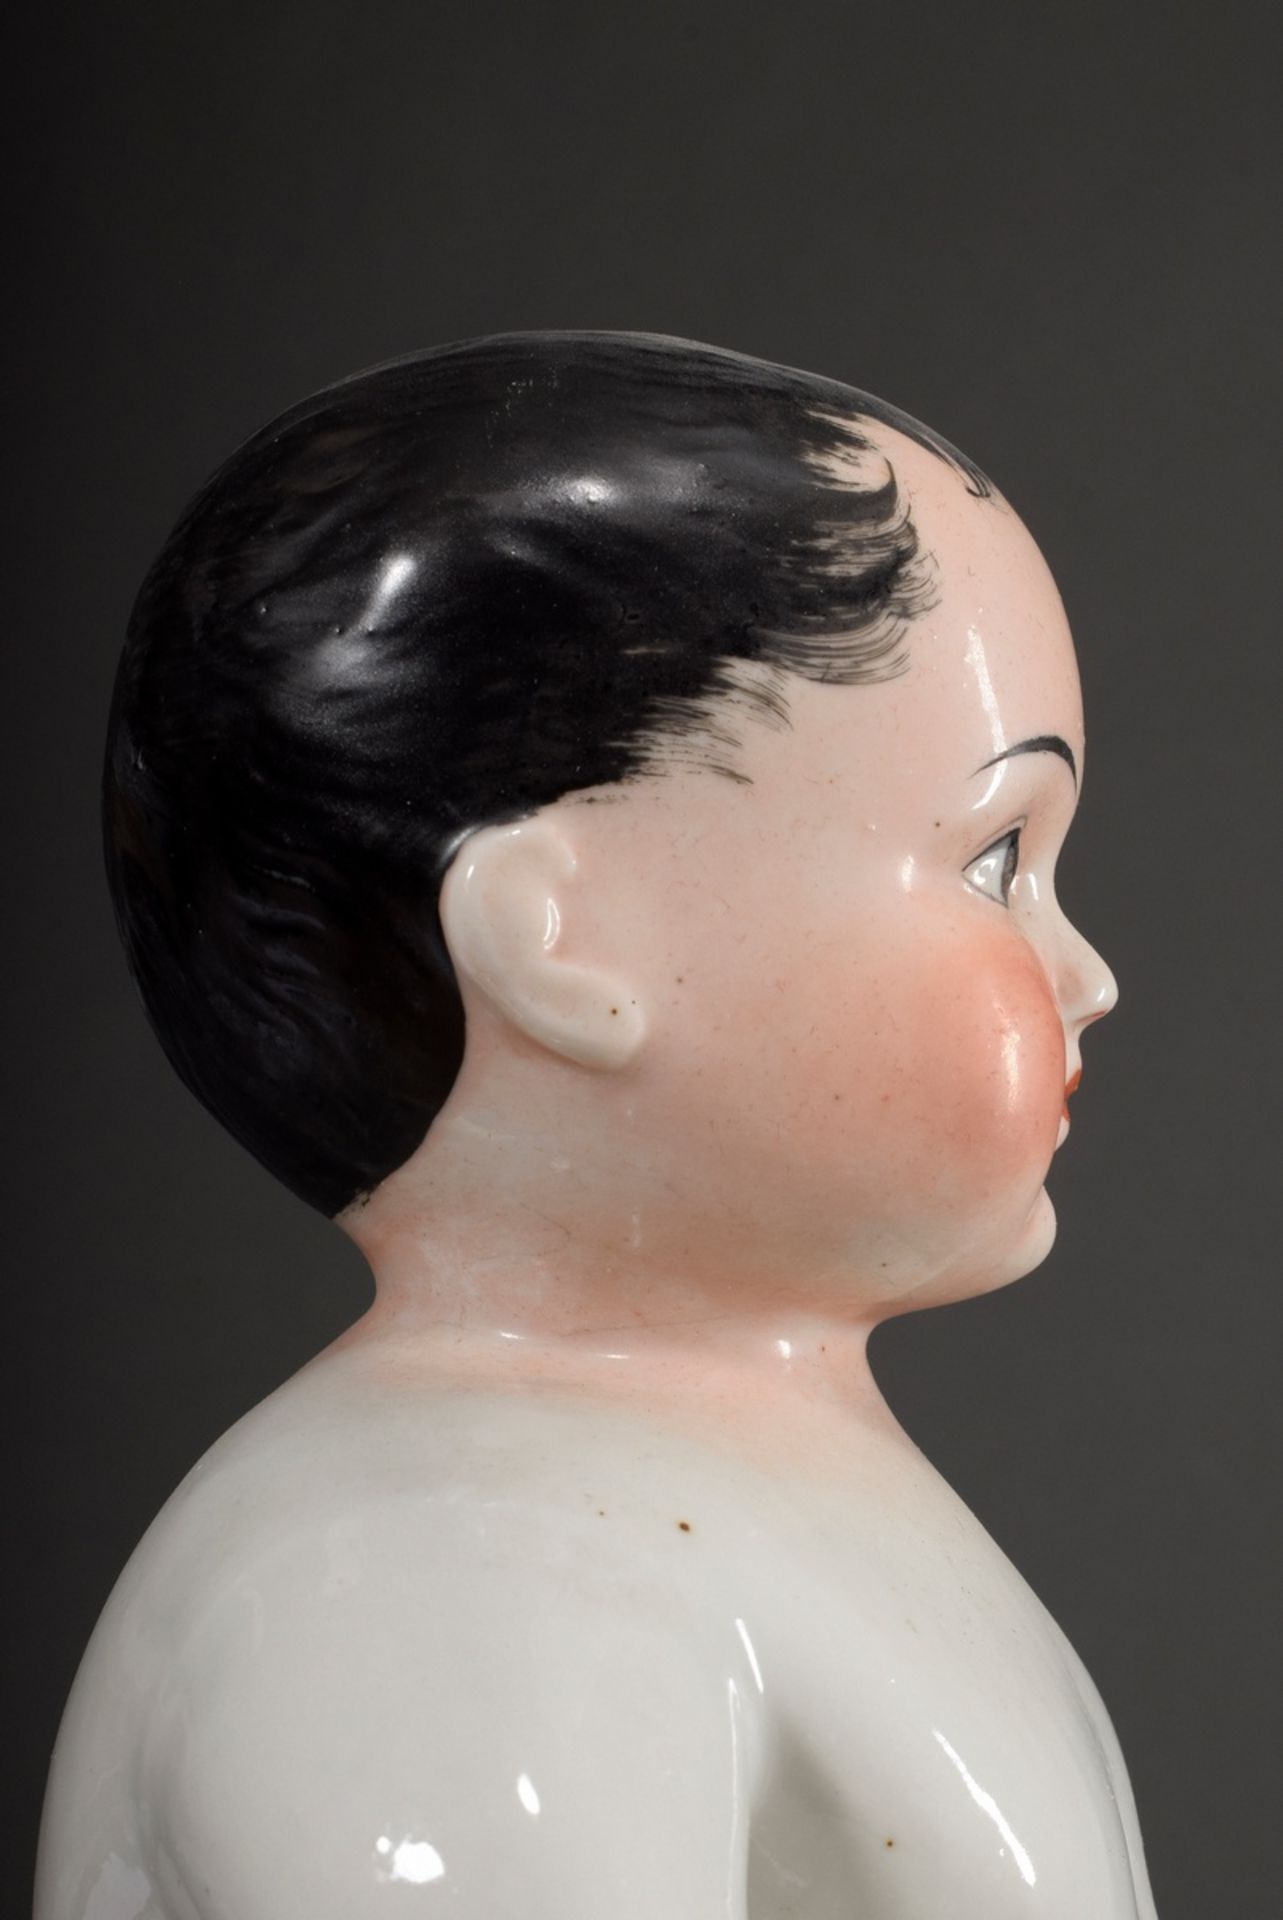 Porzellan Badepuppe "Frozen Charlotte" mit polychrom bemaltem Gesicht, 19.Jh., H. 33cm, leichte Alt - Bild 6 aus 10